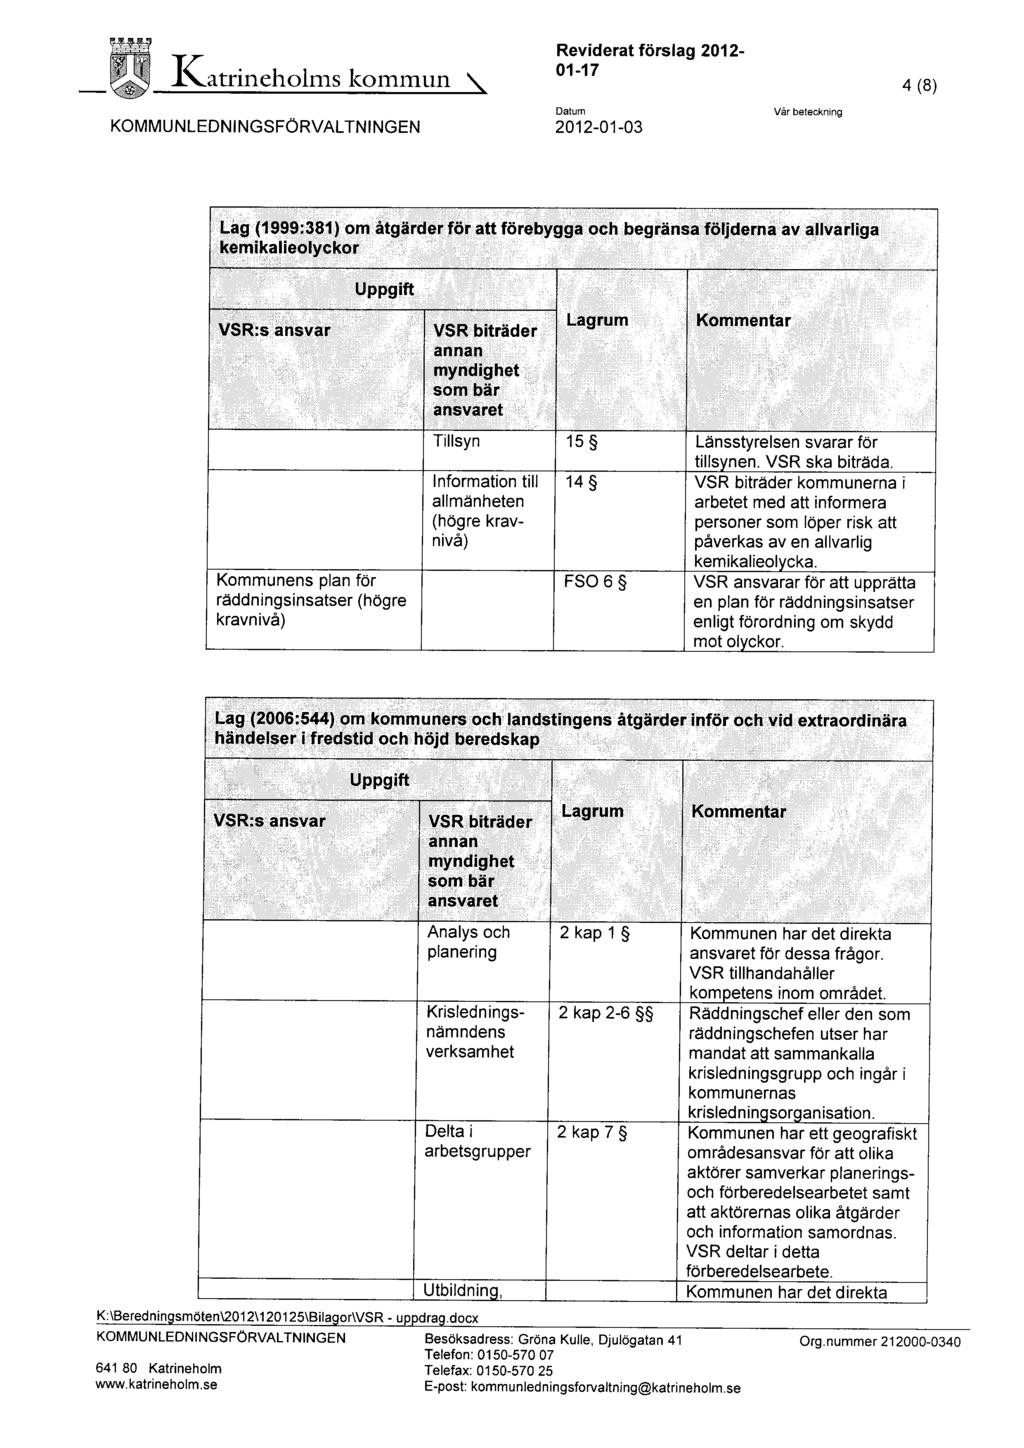 '~ 1\atrineholms kommun Reviderat förslag 2012-01-17 4 (8) KOMMUNLEDNINGSFÖRVALTNINGEN Datum 2012-01-03 Vår beteckning Lag (1999:381) om åtgärder för att förebygga och begränsa följderna av